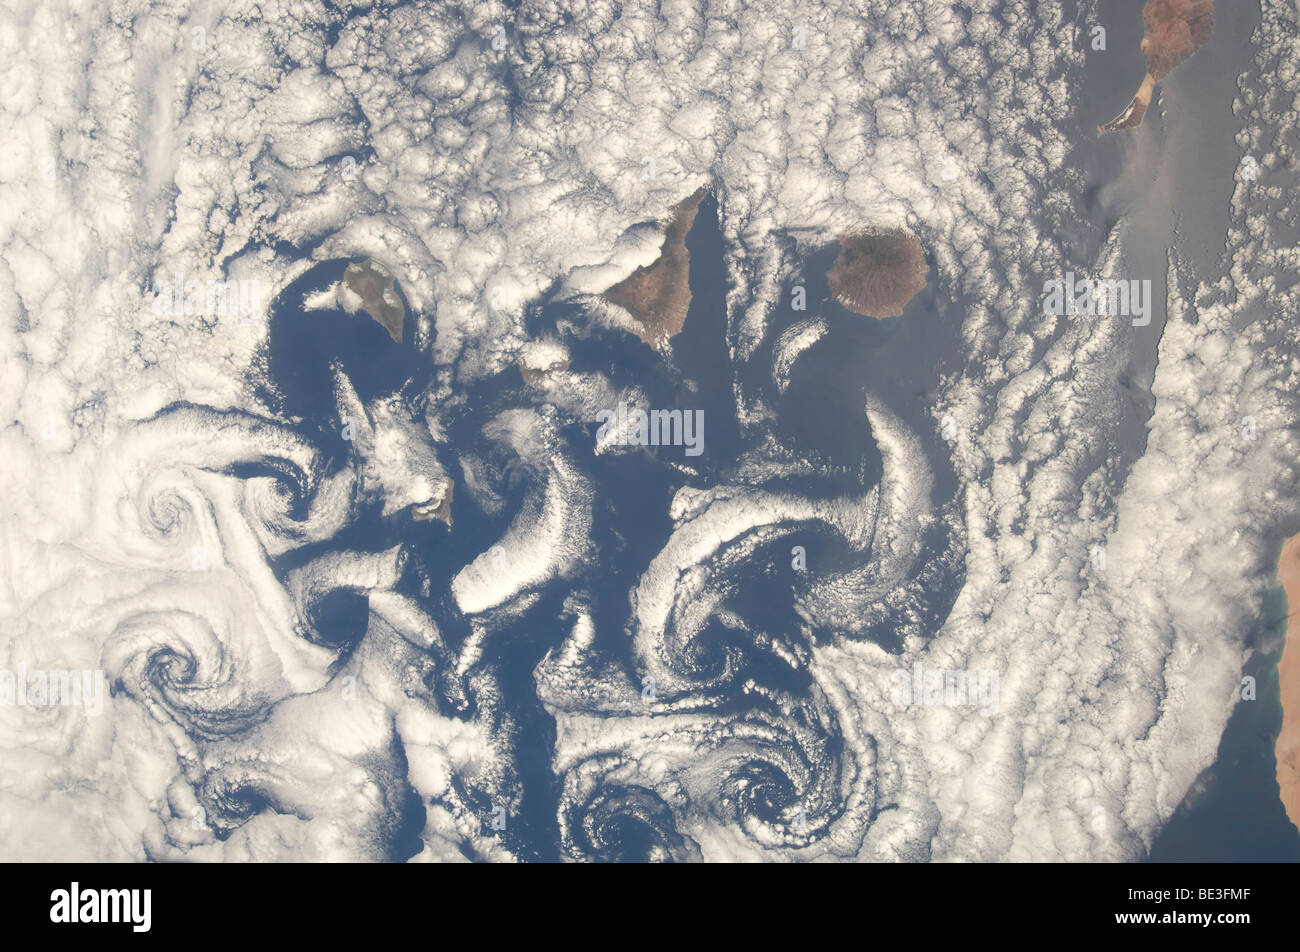 16 maggio 2009 - Una vista nadir di cloud di vortici nella zona delle isole Canarie nell'Oceano Atlantico settentrionale. Foto Stock